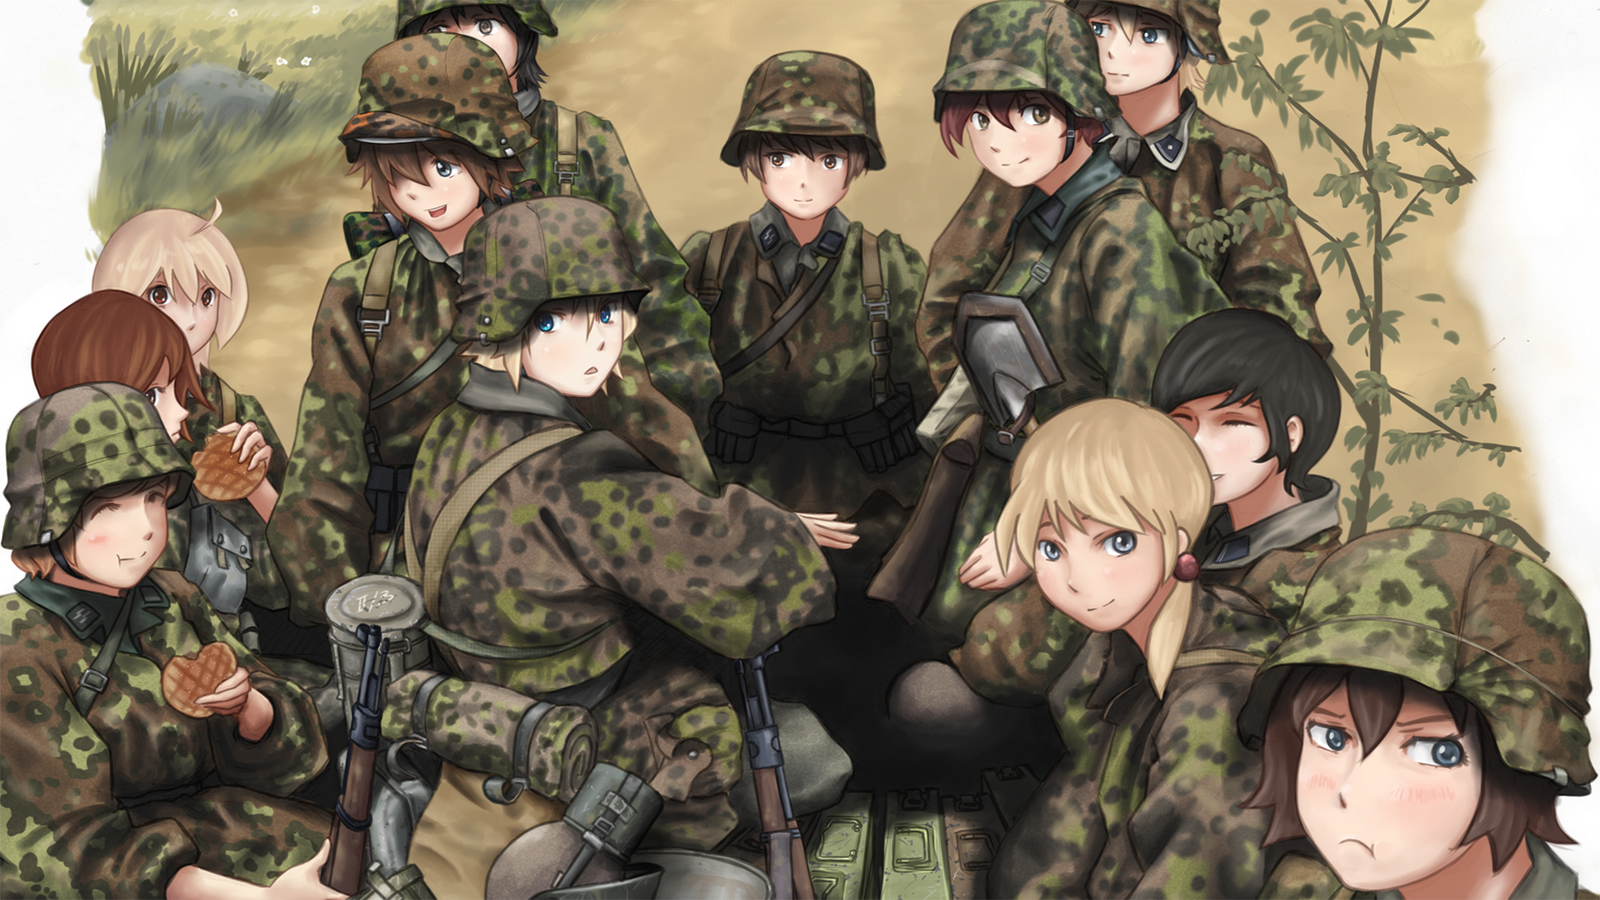 Anime 1600x900 Waffen-SS anime girls with guns World War II uniform anime girls helmet eating gun girls with guns